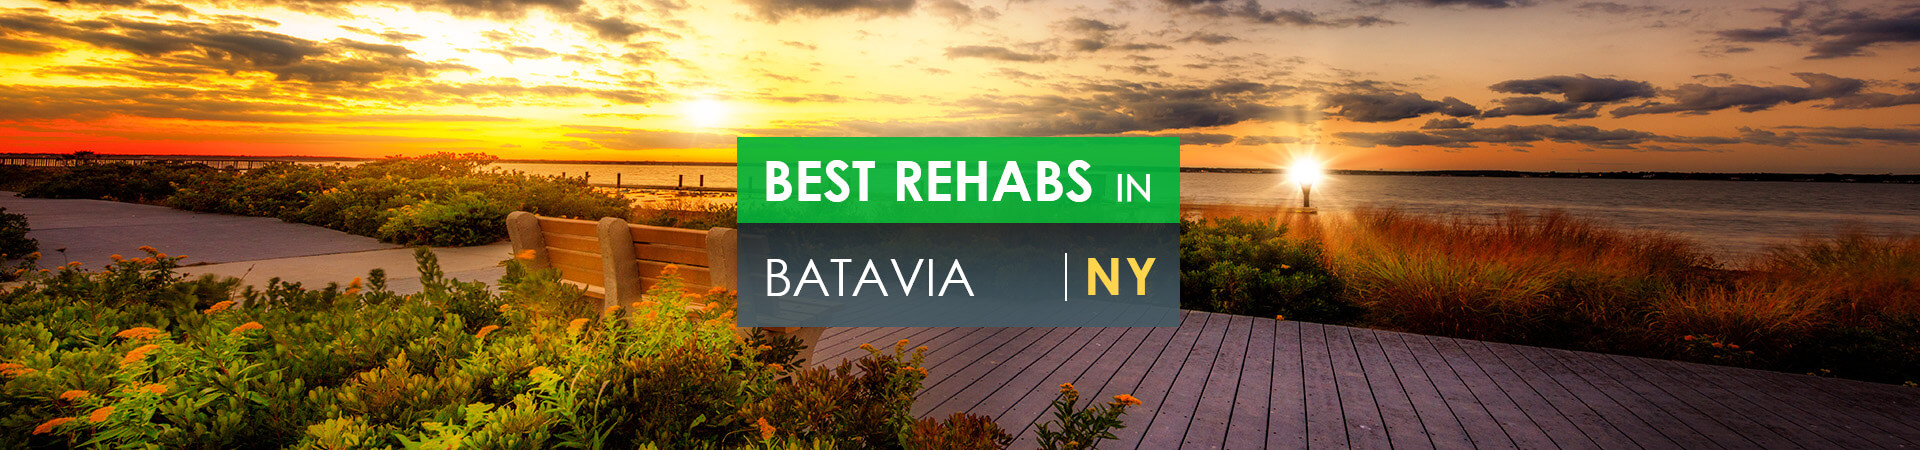 Best rehabs in Batavia, NY